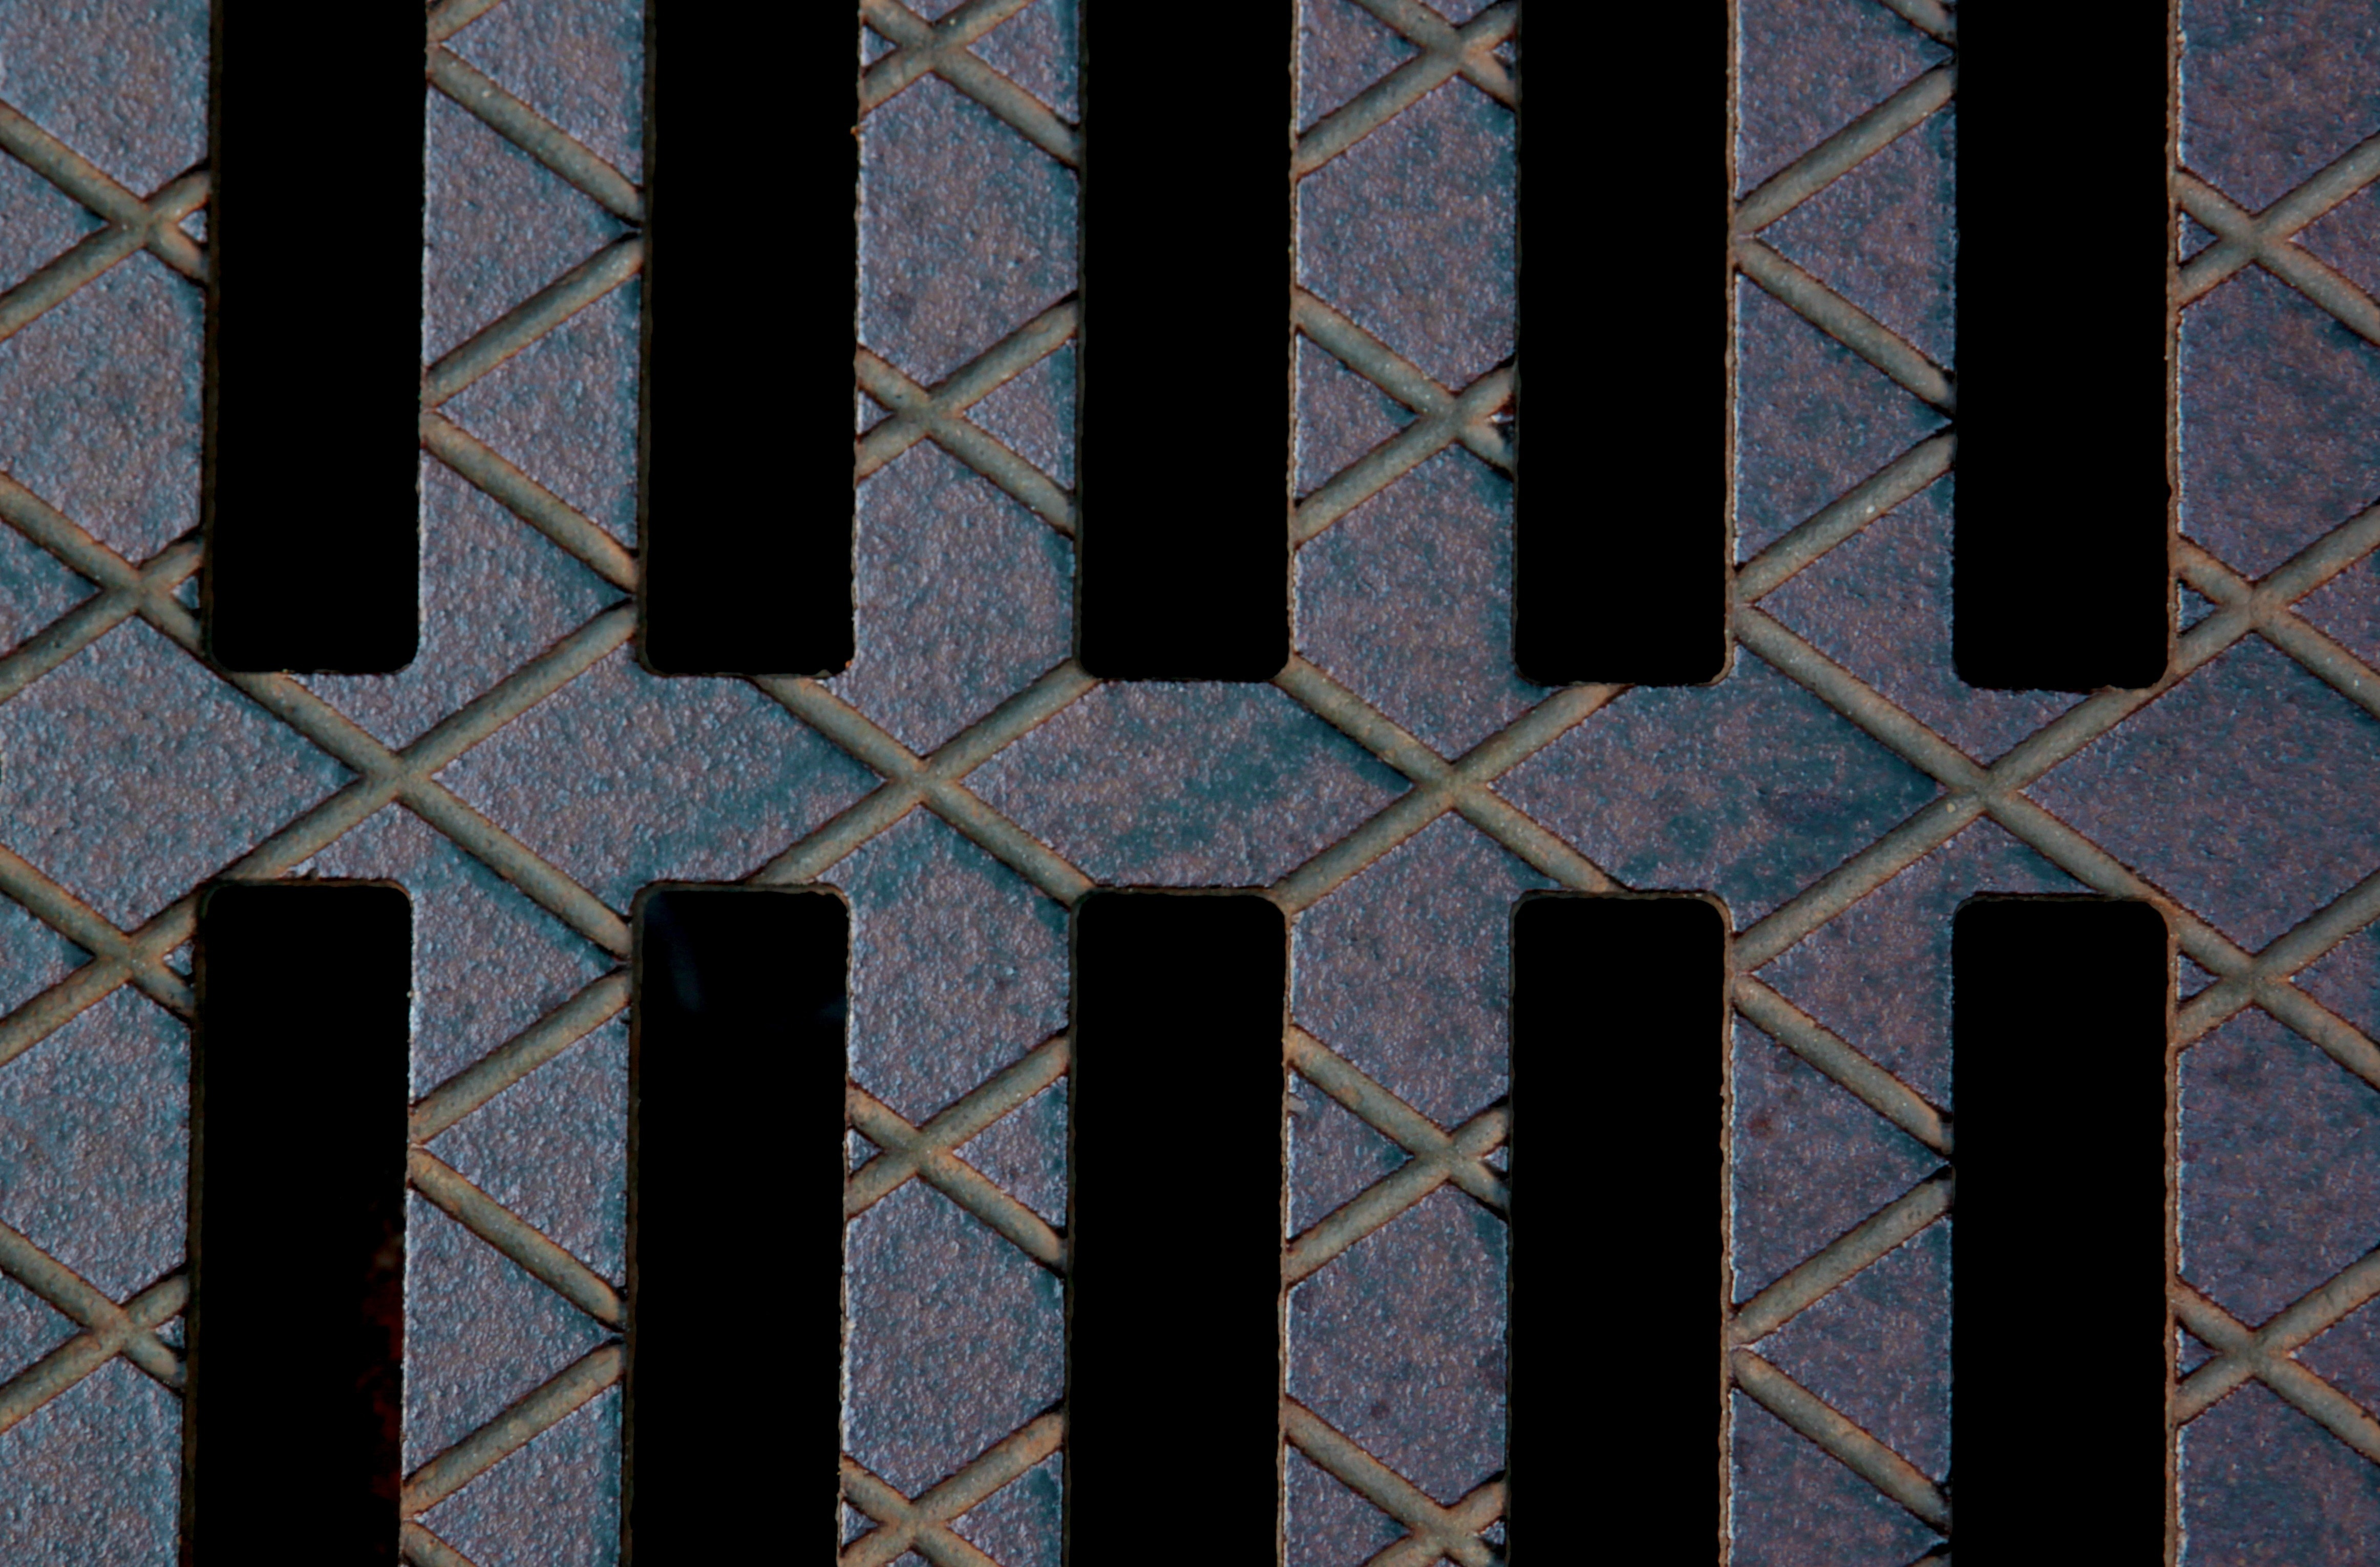 Manhole Cover, Background, Gulli, pattern, full frame